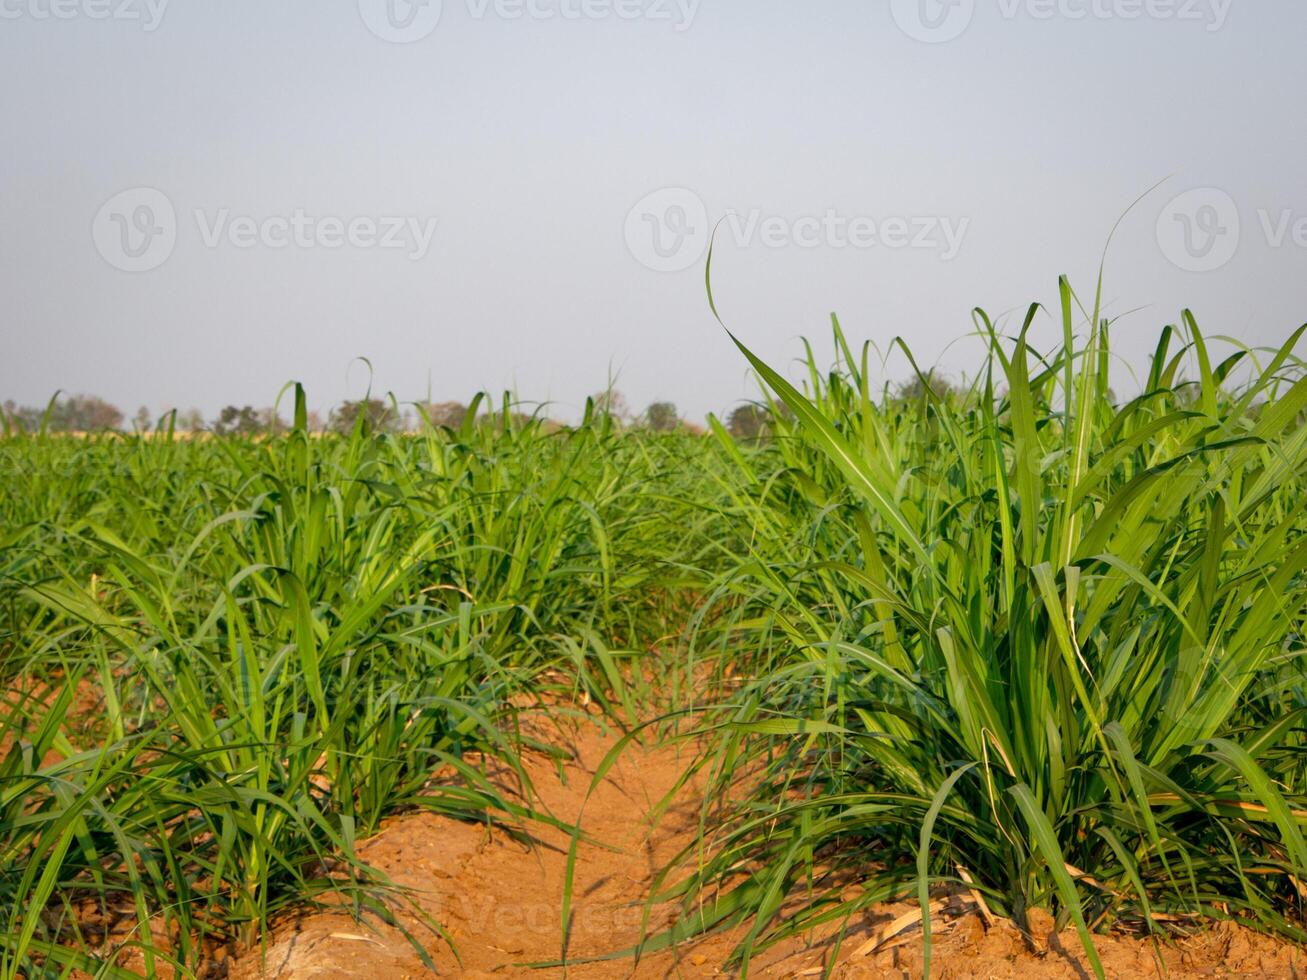 plantaciones de caña de azúcar, la planta agrícola tropical en tailandia foto